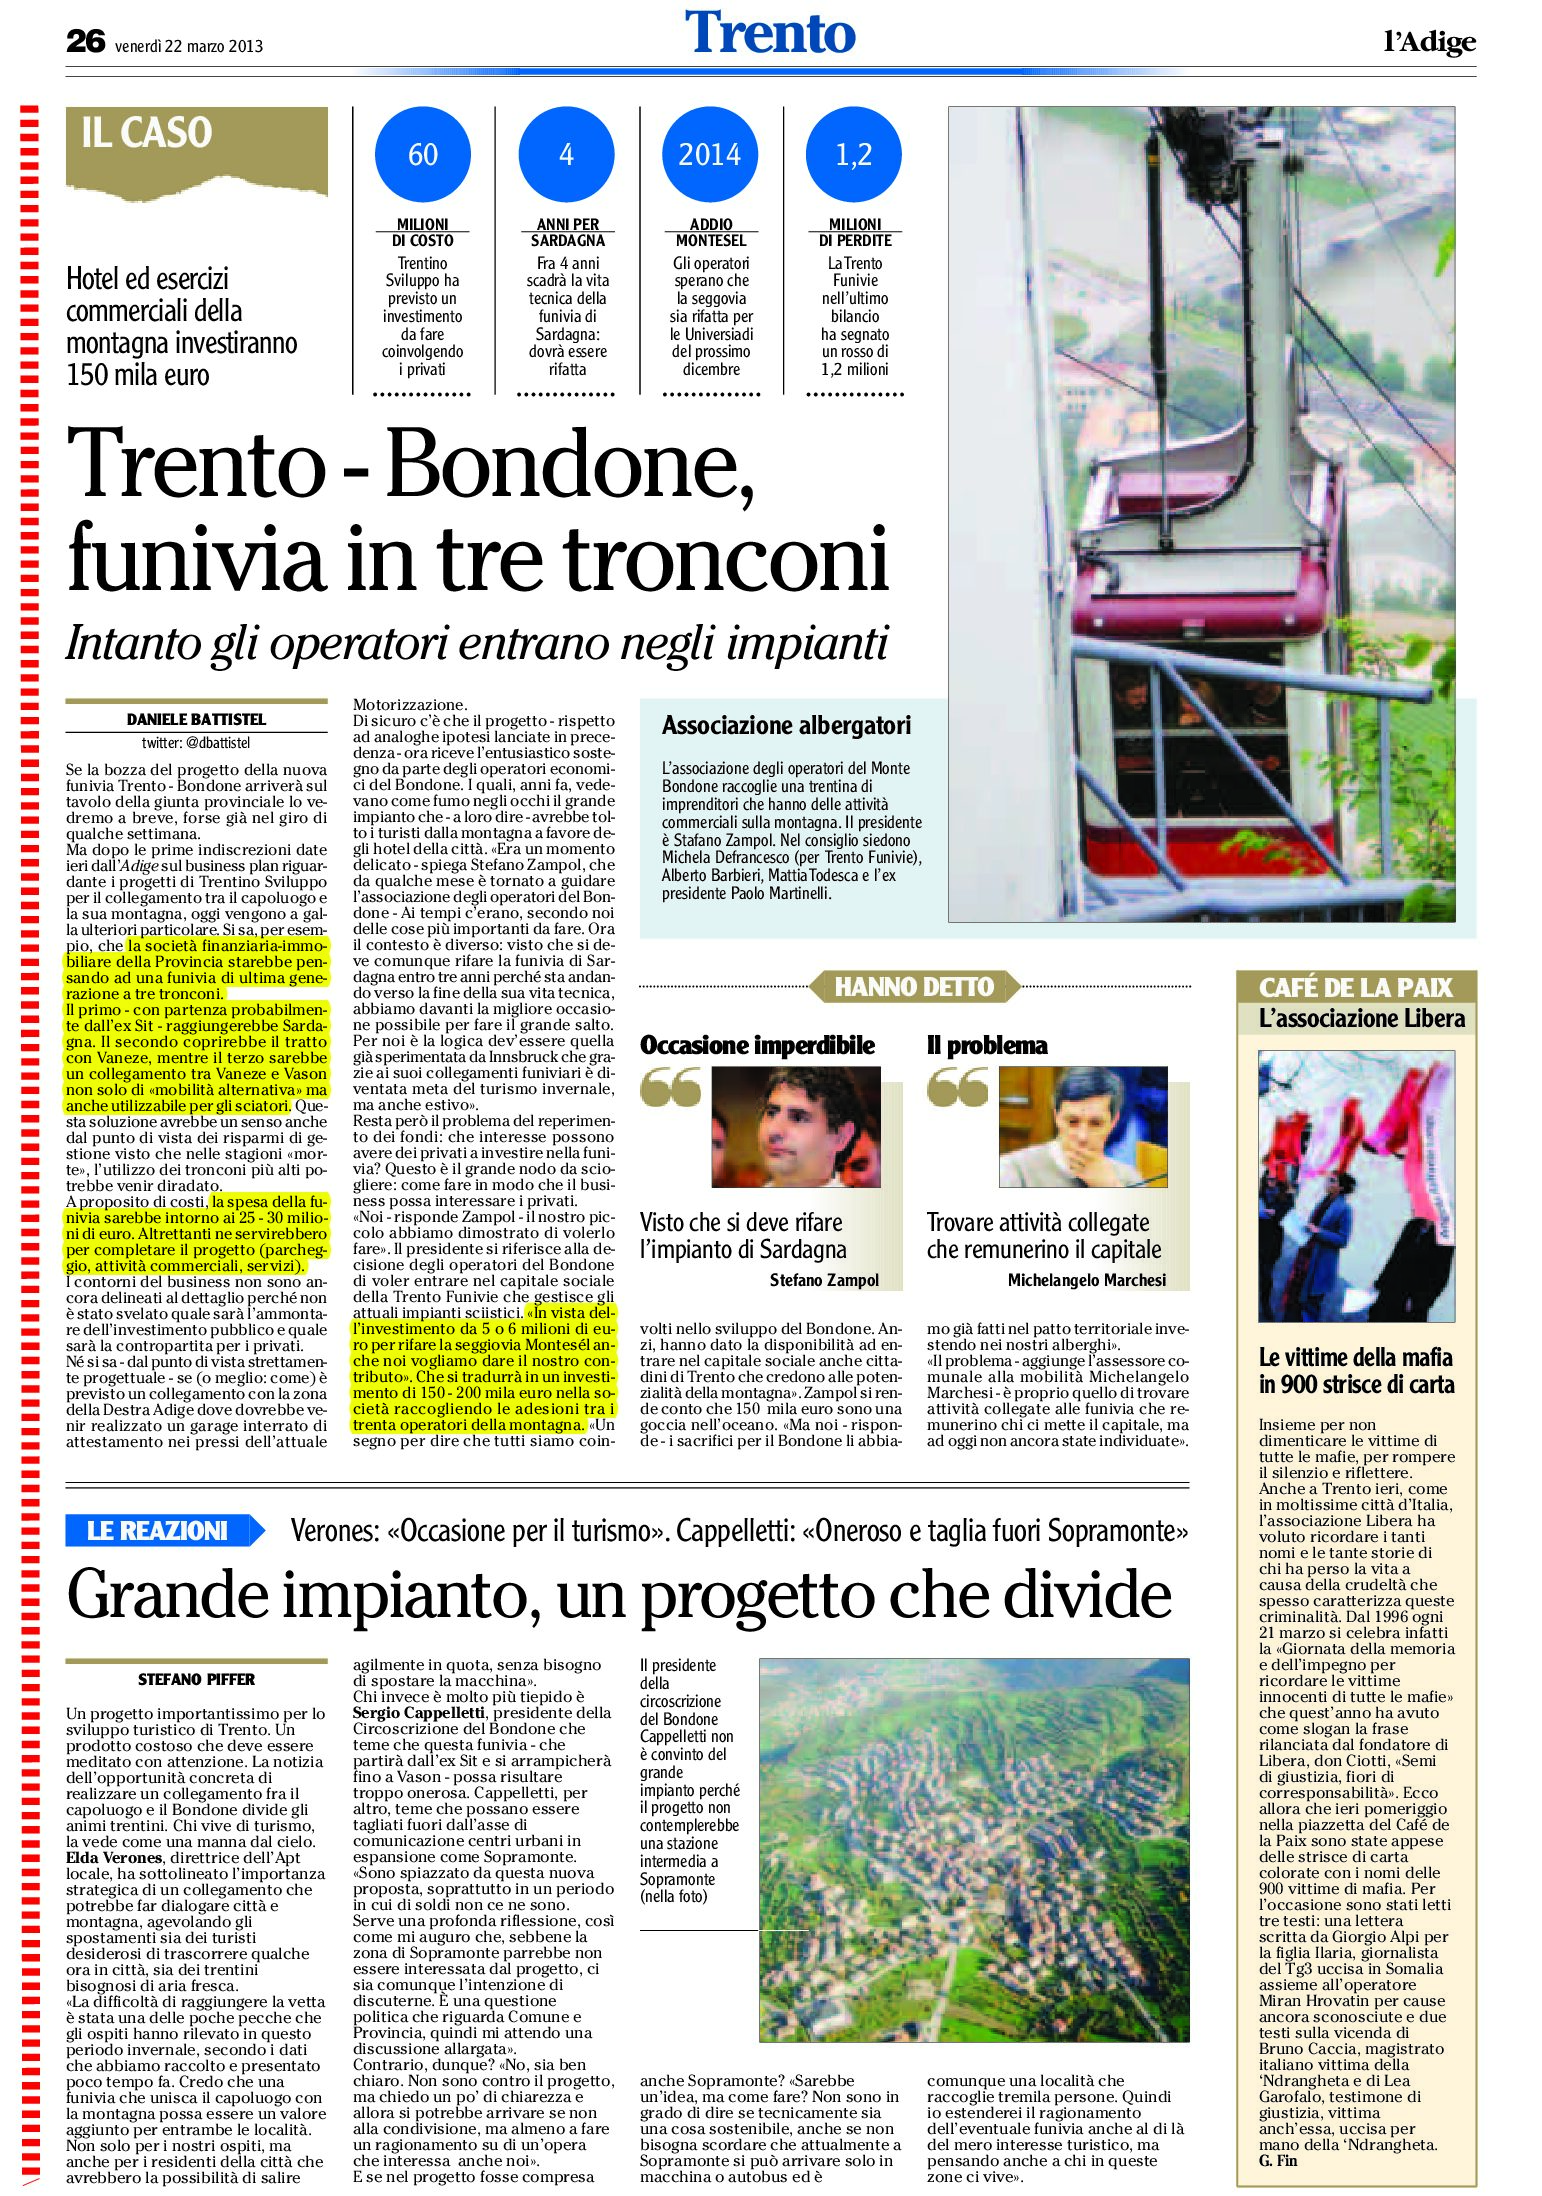 Trento – Bondone, funivia in tre tronconi